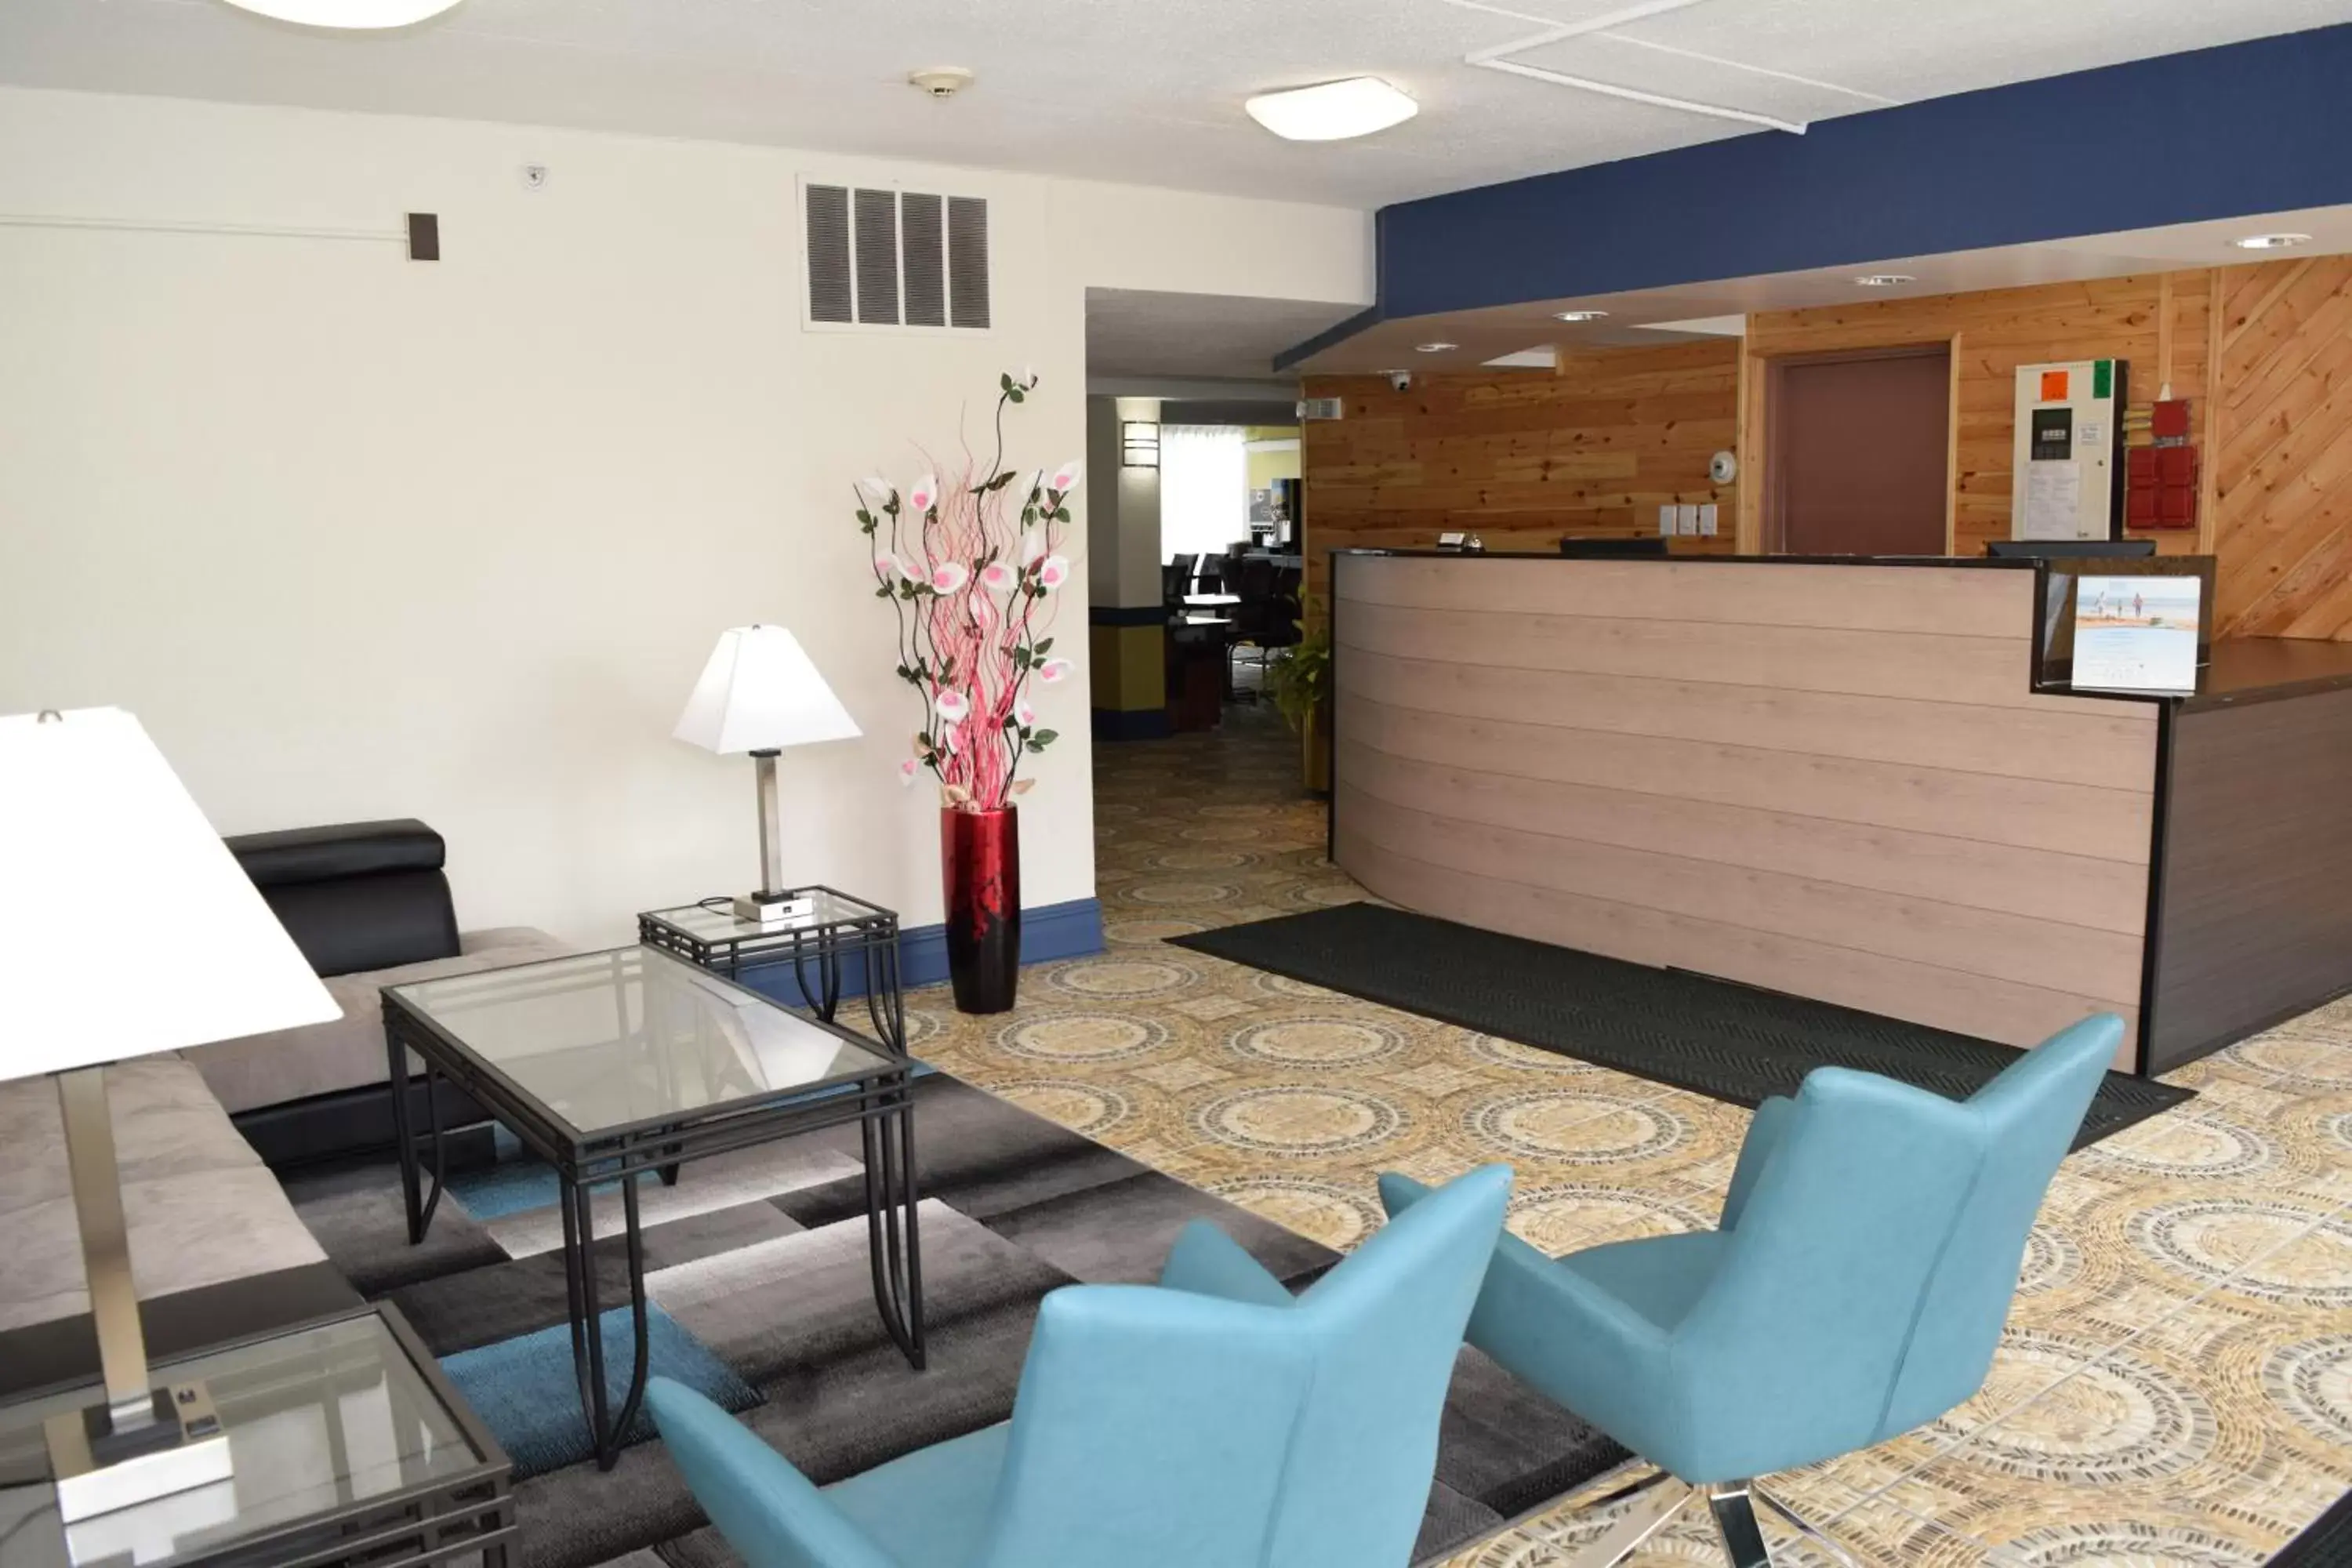 Lobby or reception, Lobby/Reception in Baymont by Wyndham - Chicago - Addison - O'Hare